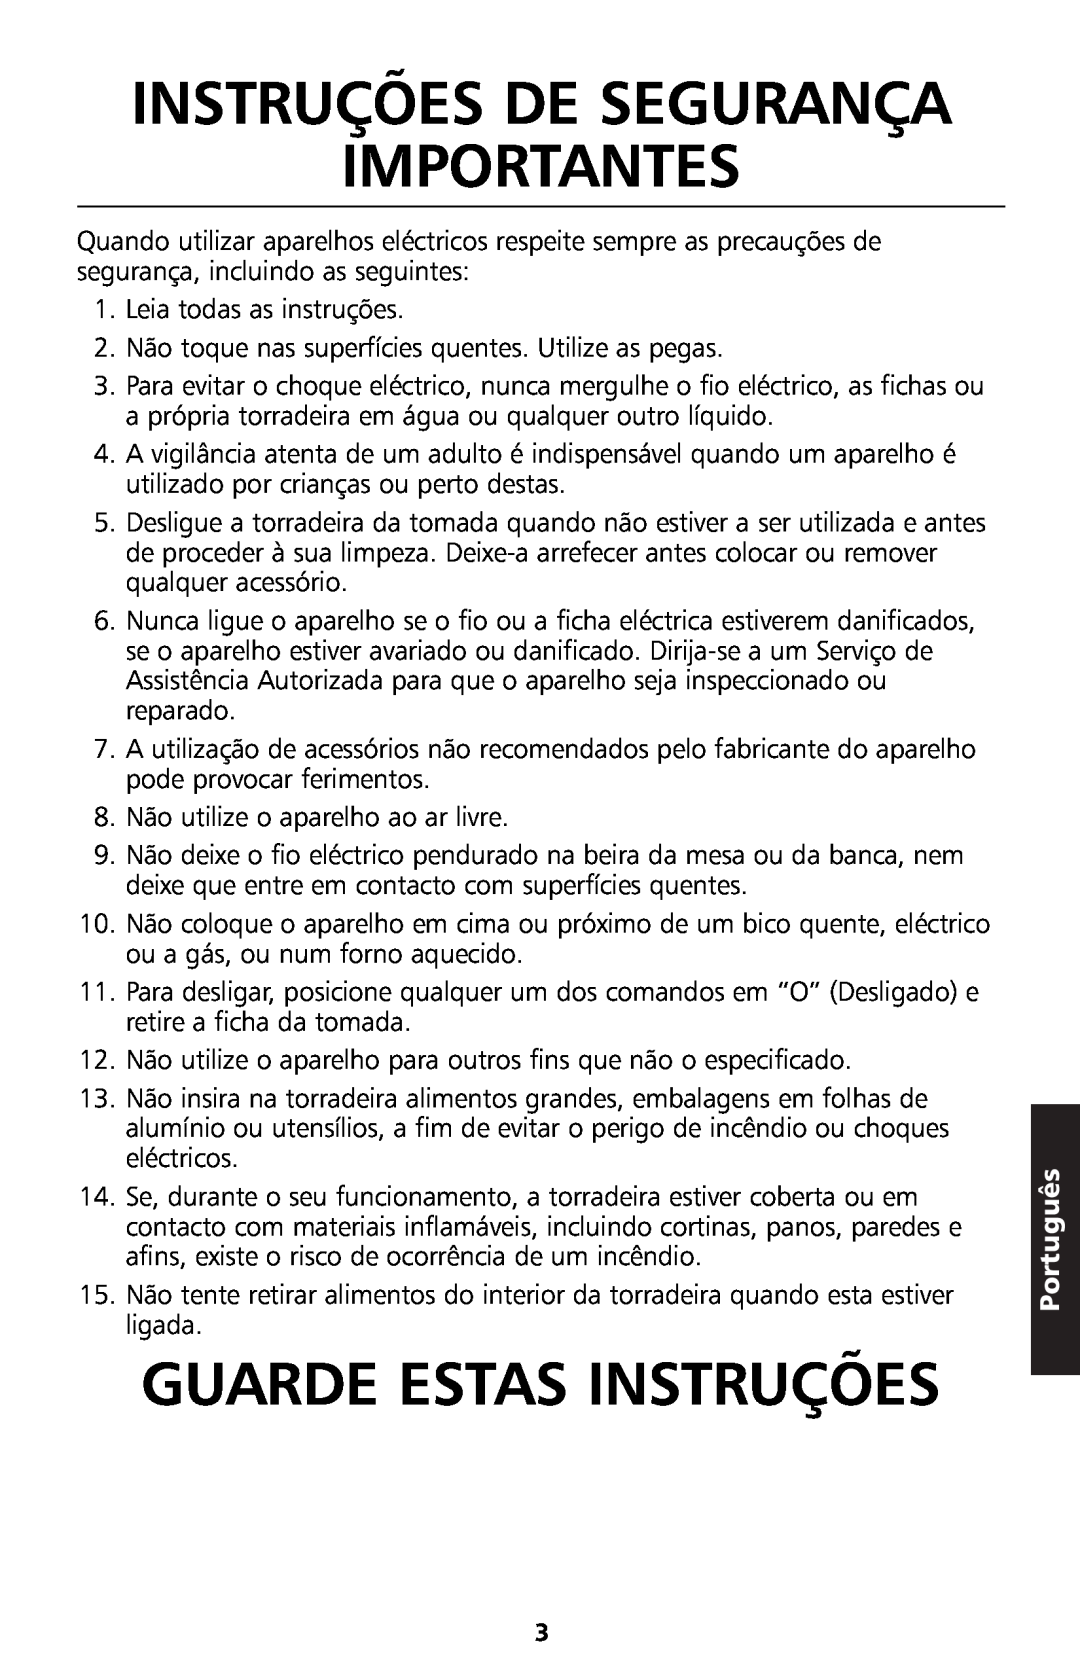 KitchenAid 5KTT890 manual Instruções De Segurança Importantes, Guarde Estas Instruções, Português 